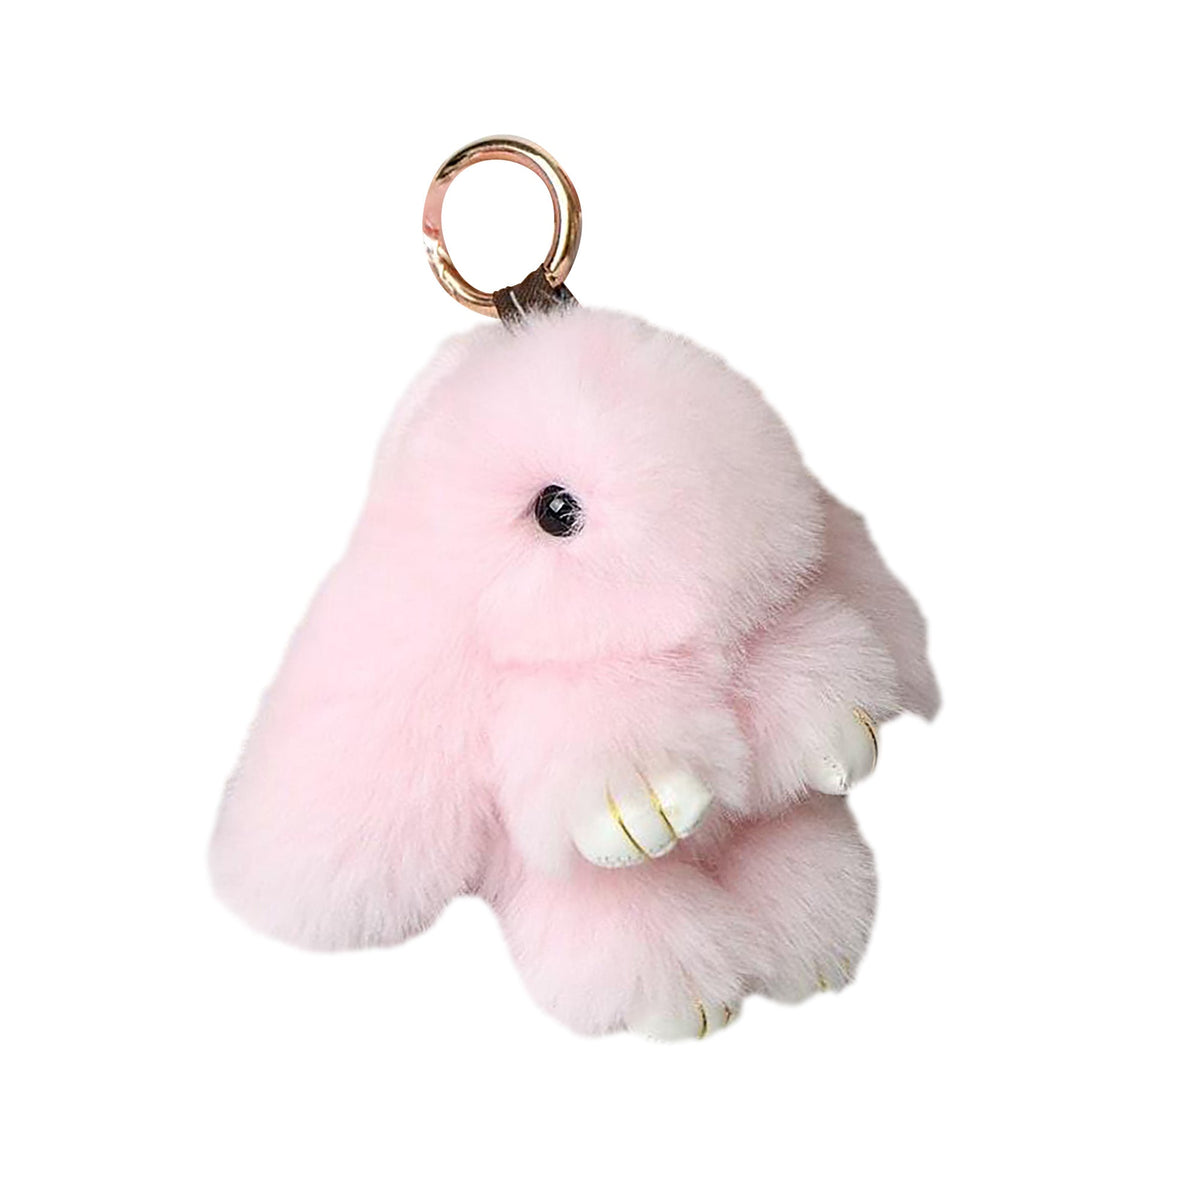 Shenzhen Huiboxin Electronics Co. Ltd Impulse Buying Pink Fluffy Bunny Plush Keychain, 1 Count